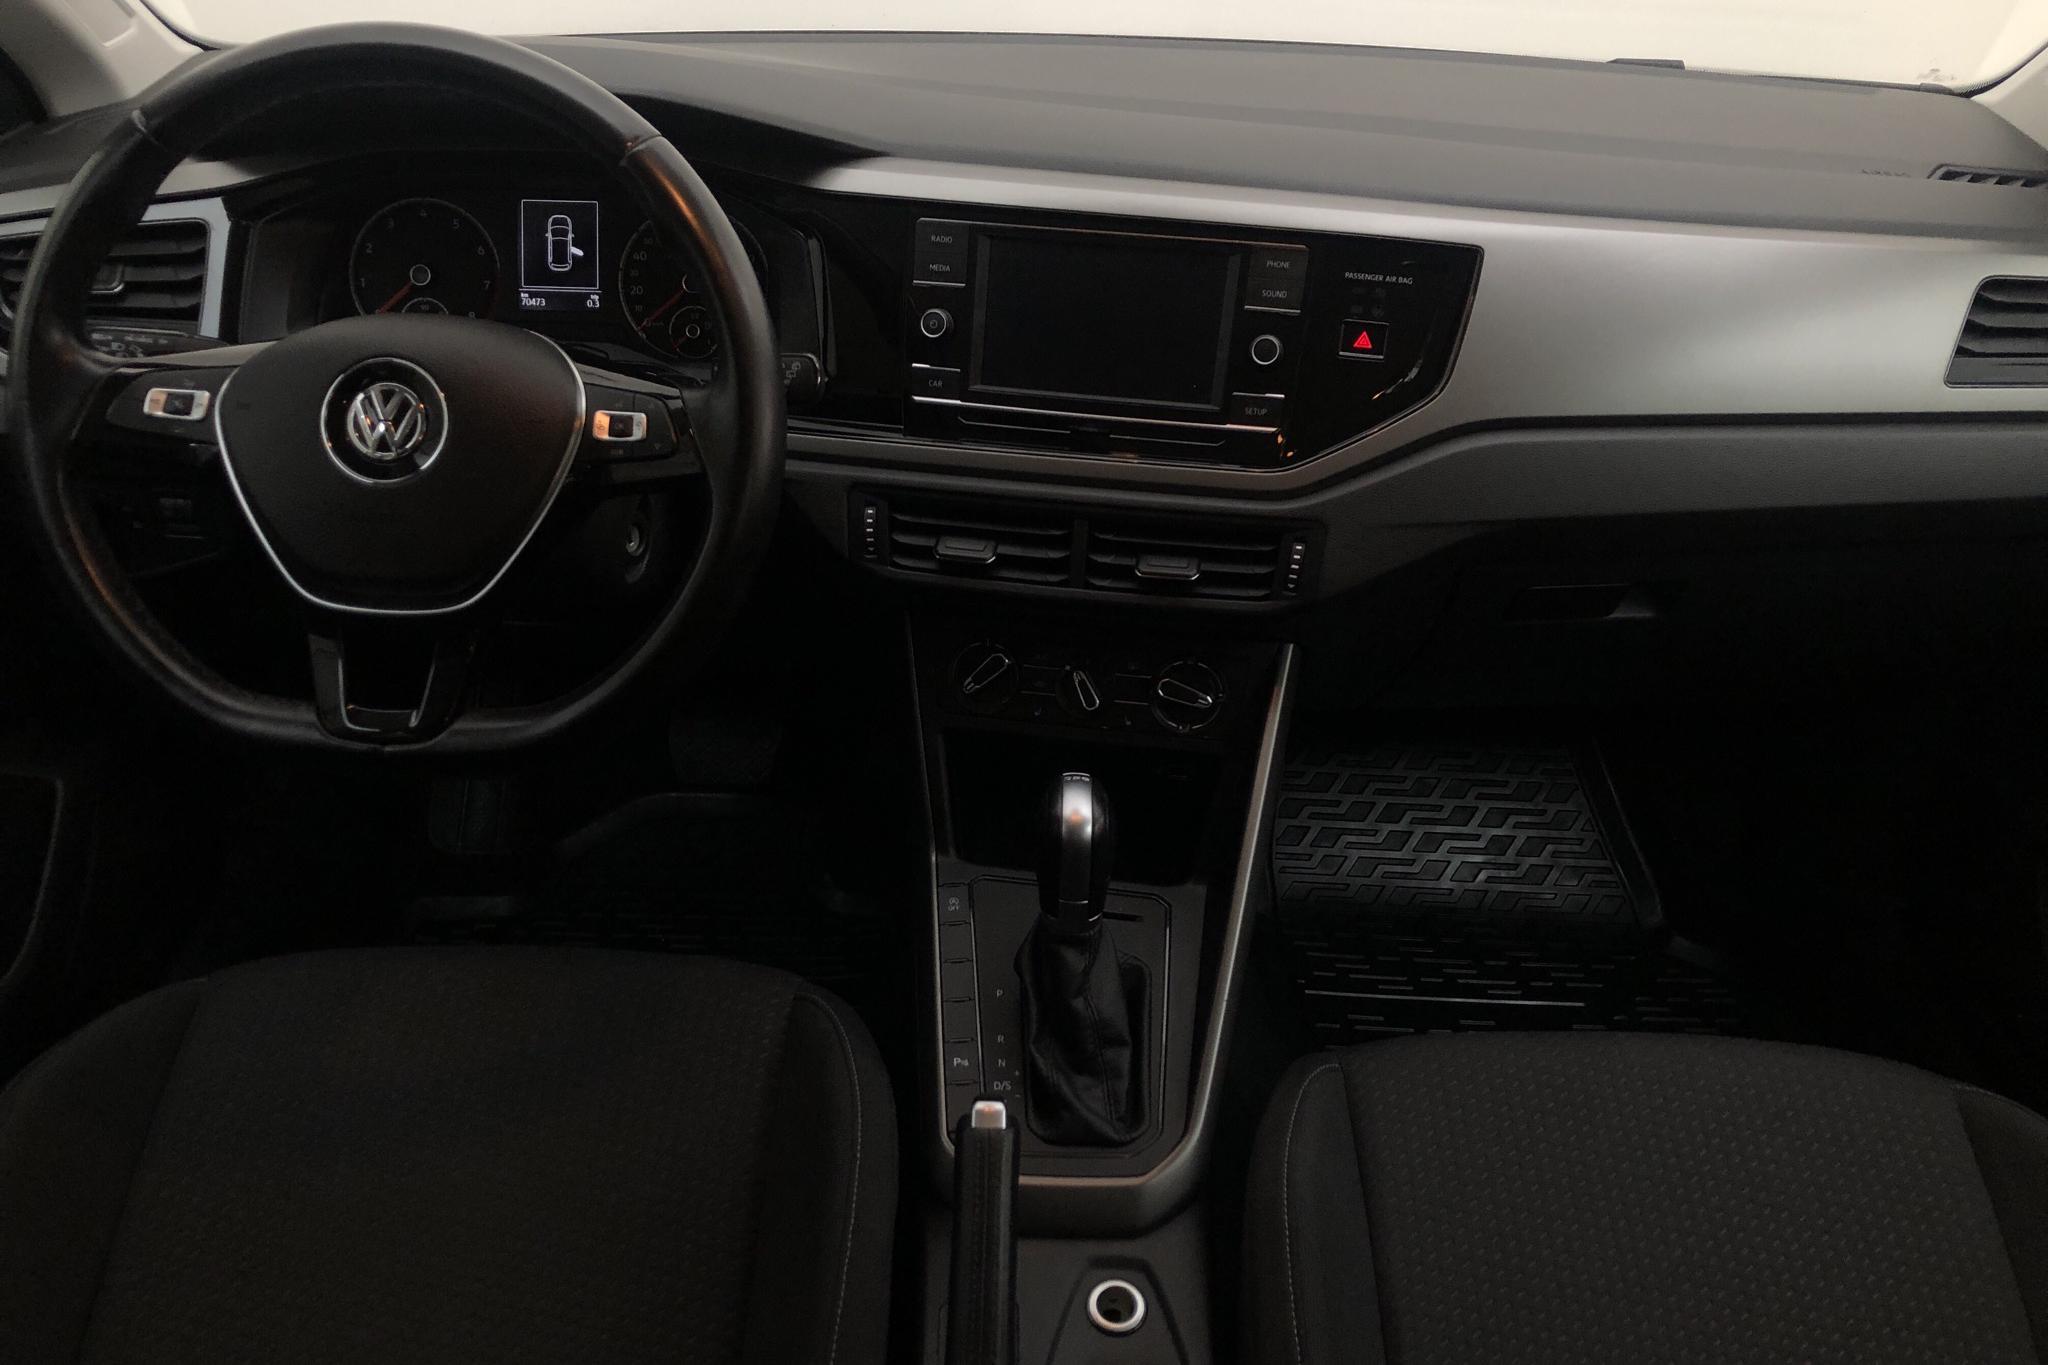 VW Polo 1.0 TSI 5dr (95hk) - 70 480 km - Automatic - 2018